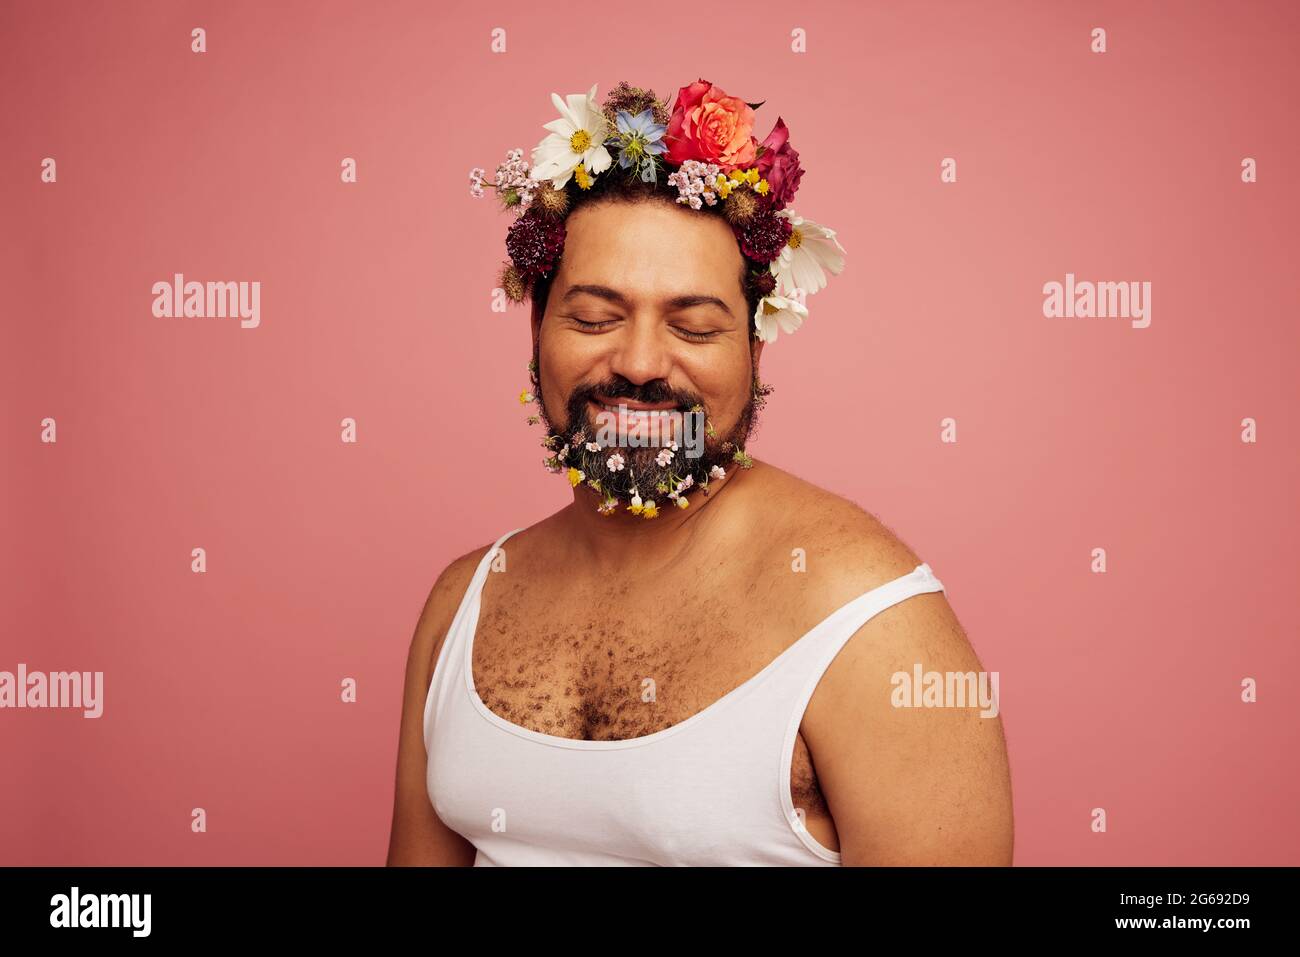 Nicht binäre Person trägt Tank Top posiert auf rosa Hintergrund. Genderqueer trägt Blumen auf Kopf und Bart. Stockfoto